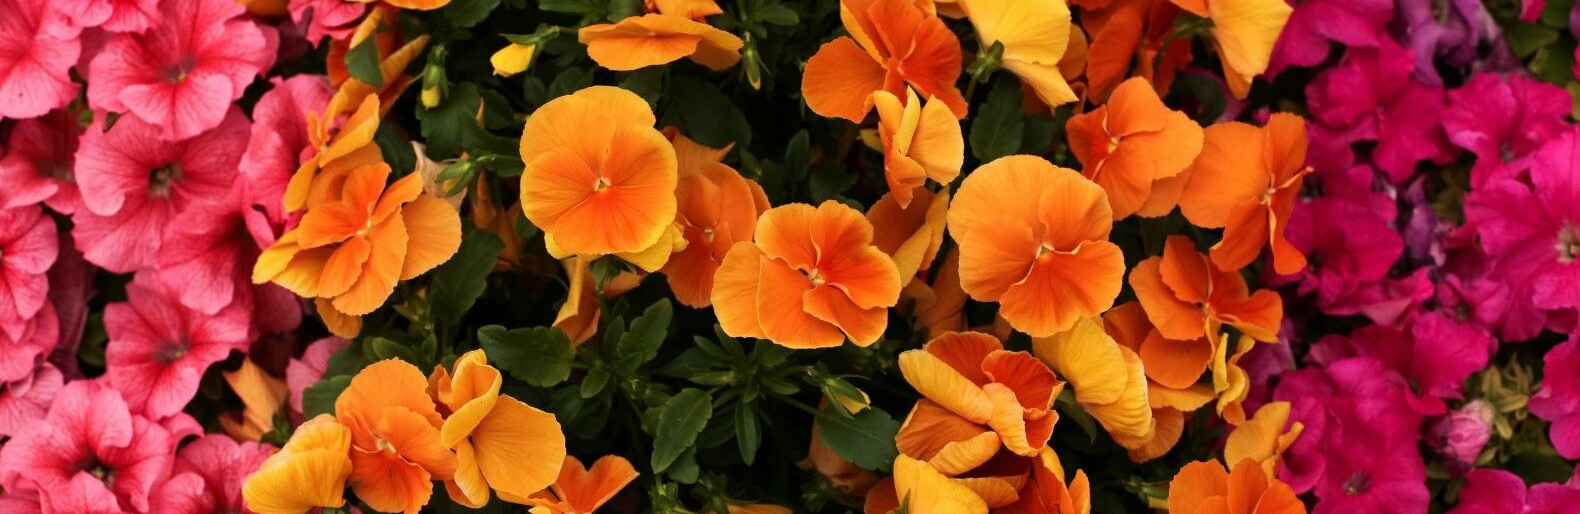 Белгородские власти закупают цветочных букетов на миллион рублей